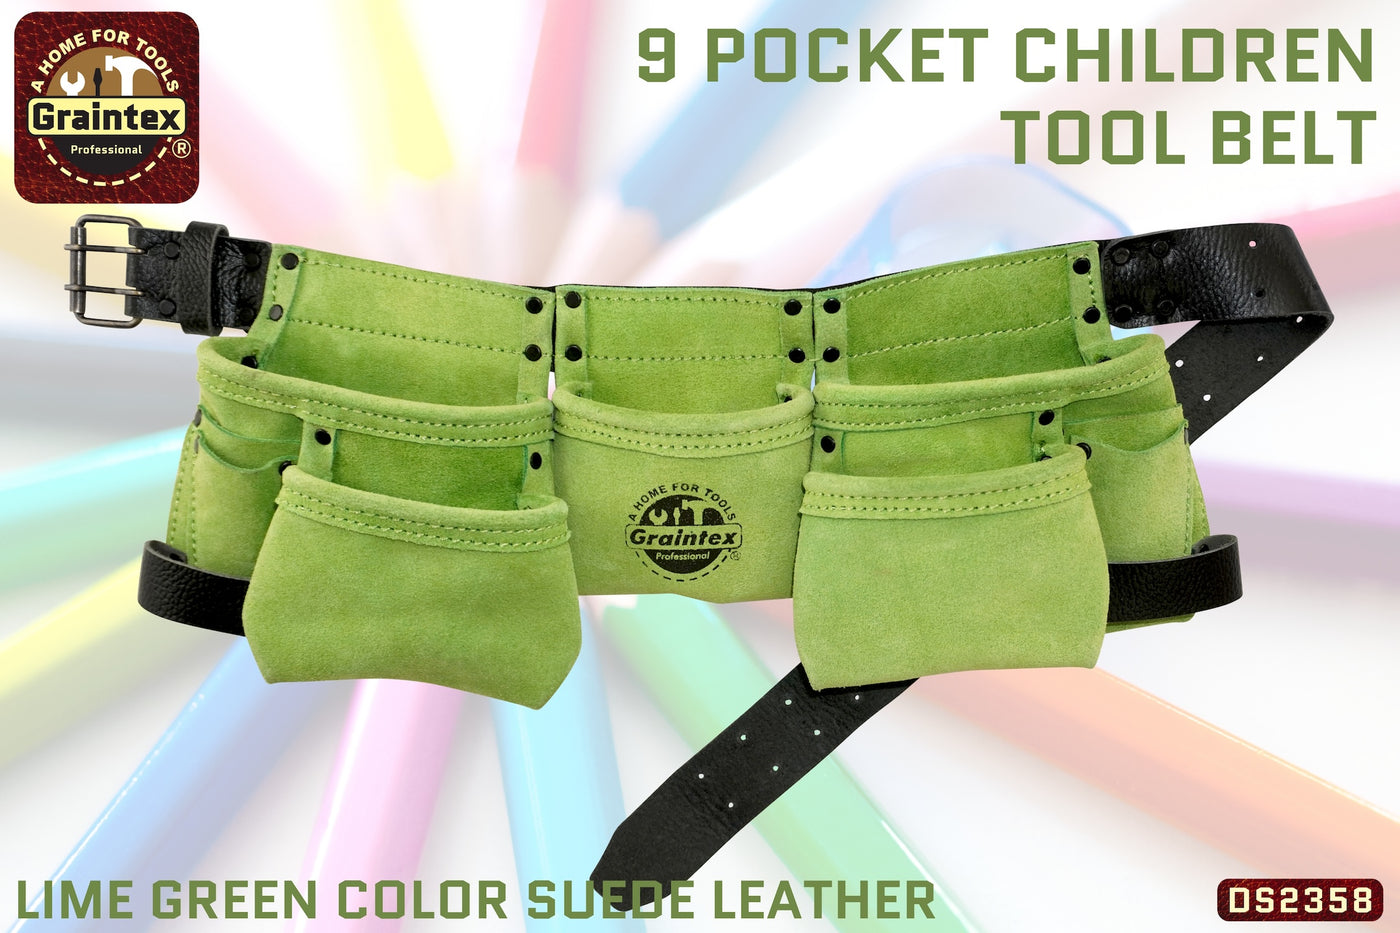 DS2358 :: 9 Pocket Children Tool Belt Lime Green Color Suede Leather